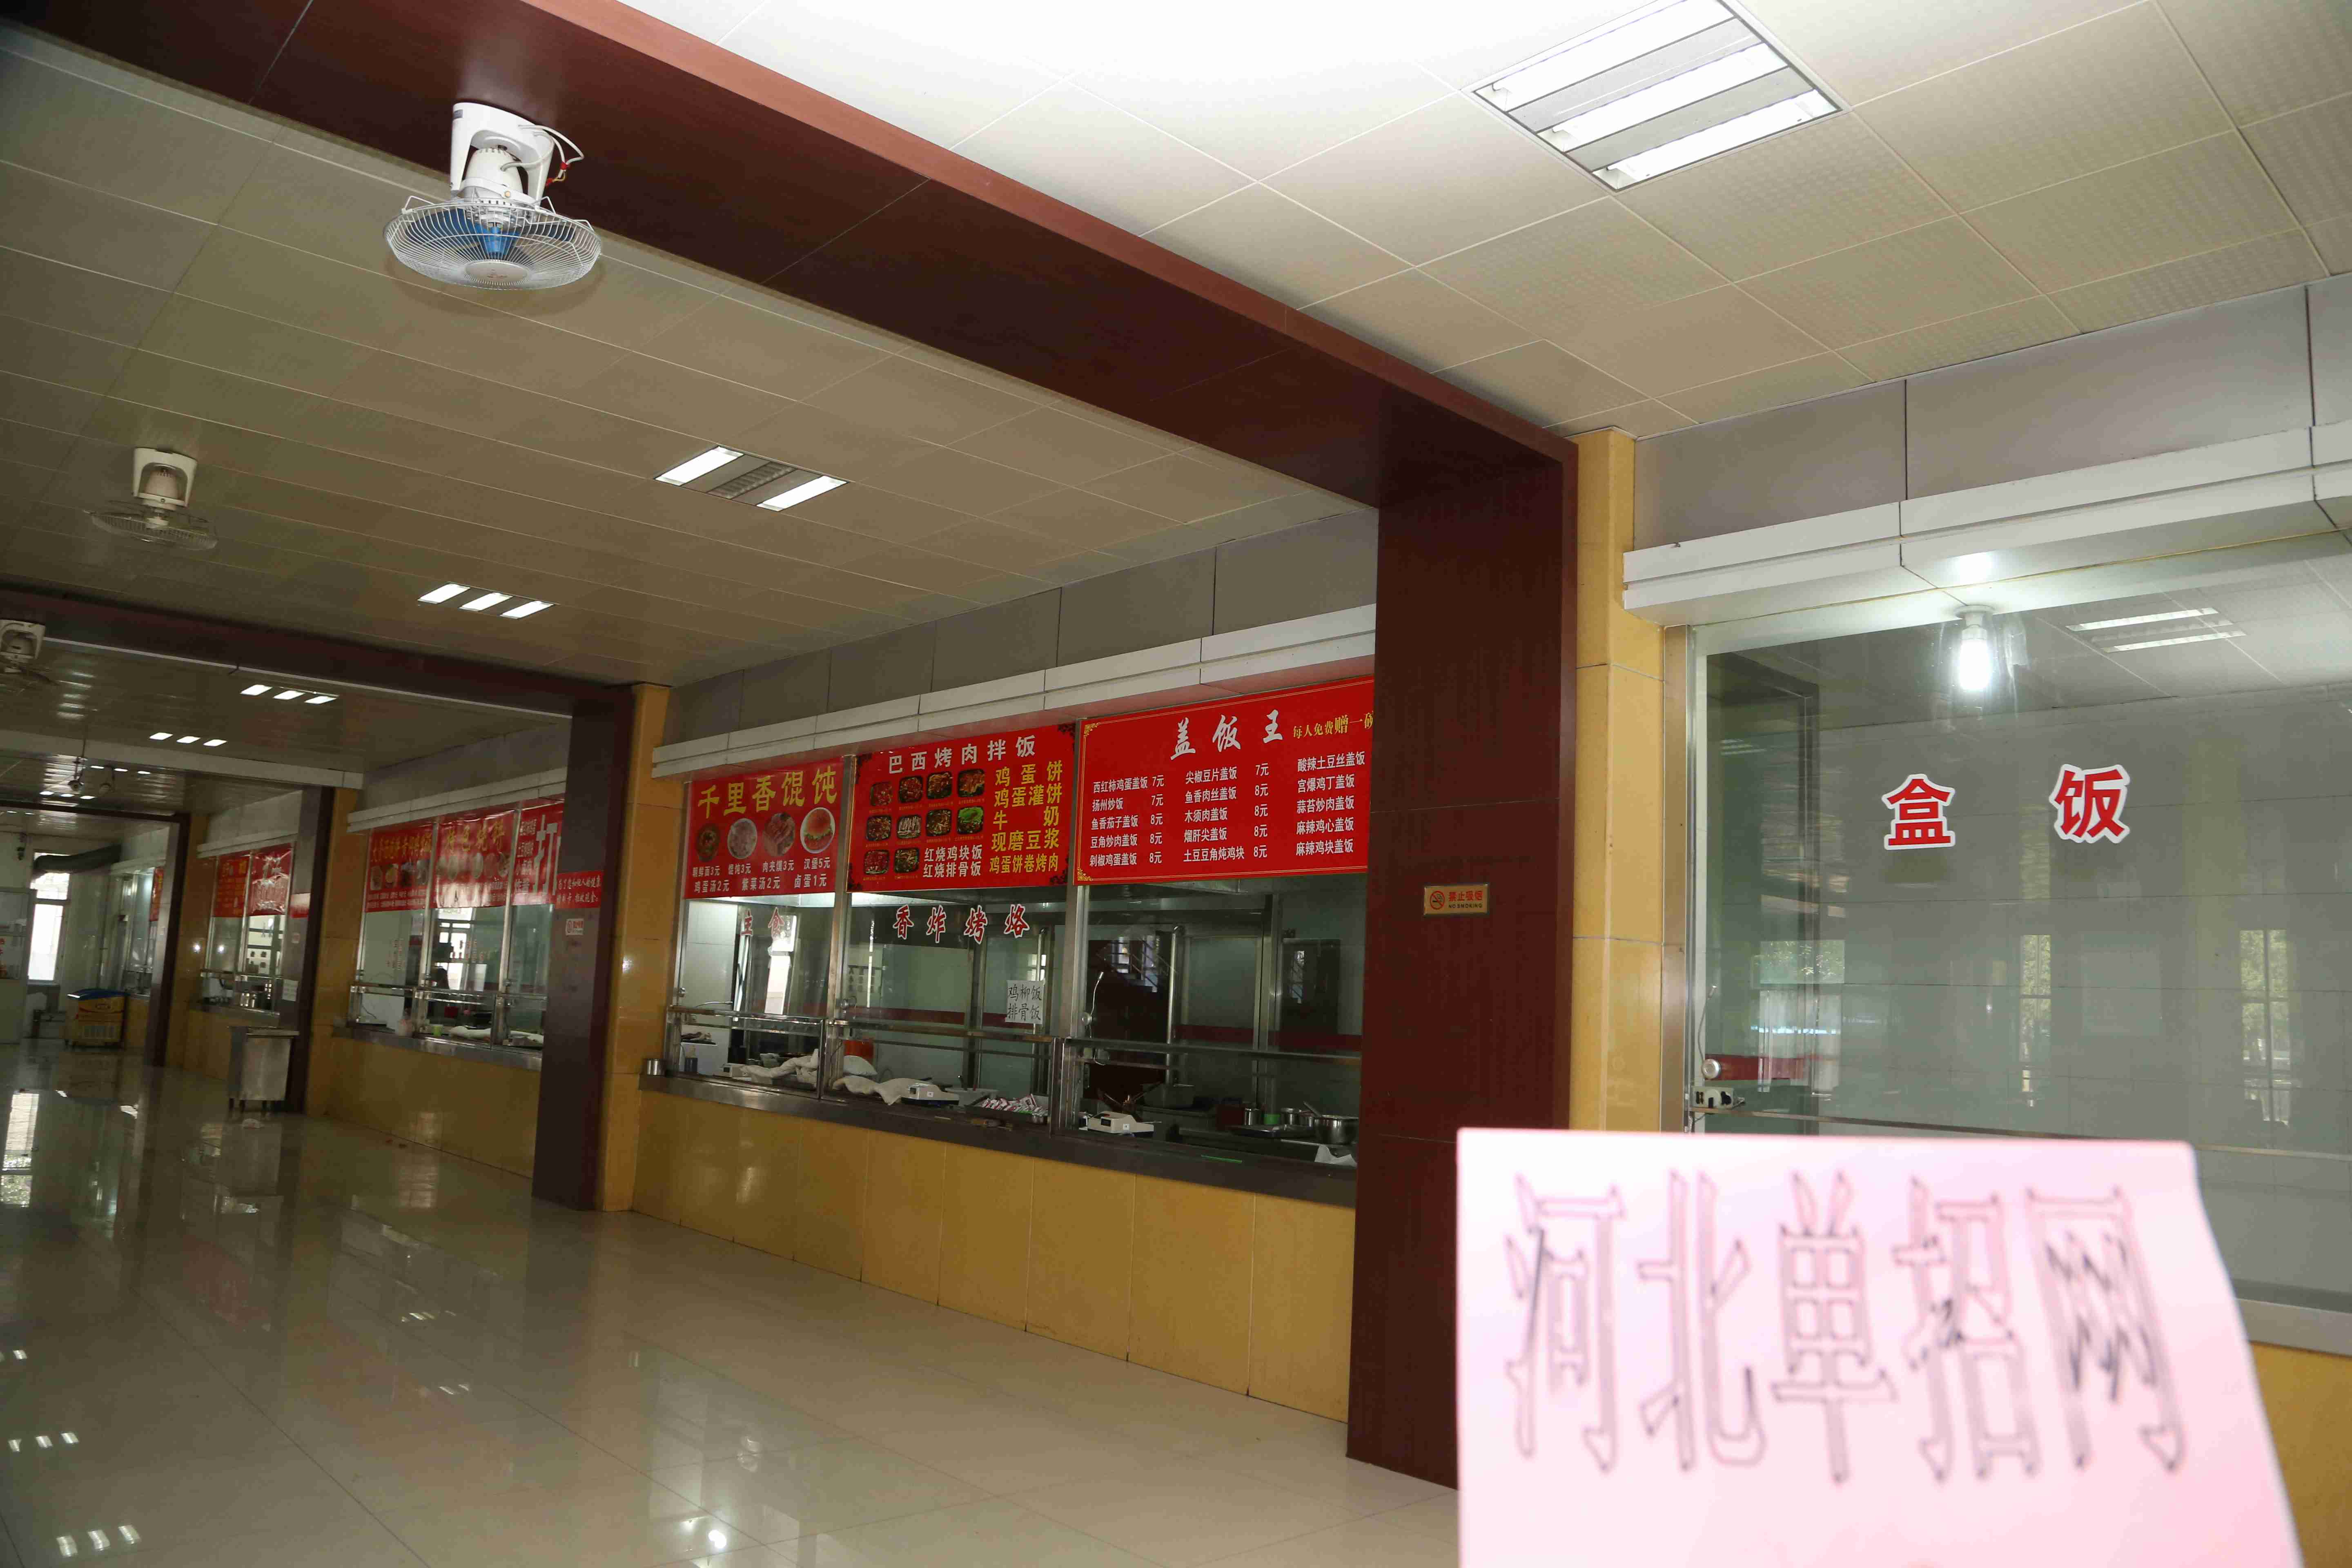 唐山科技职业技术学院食堂环境